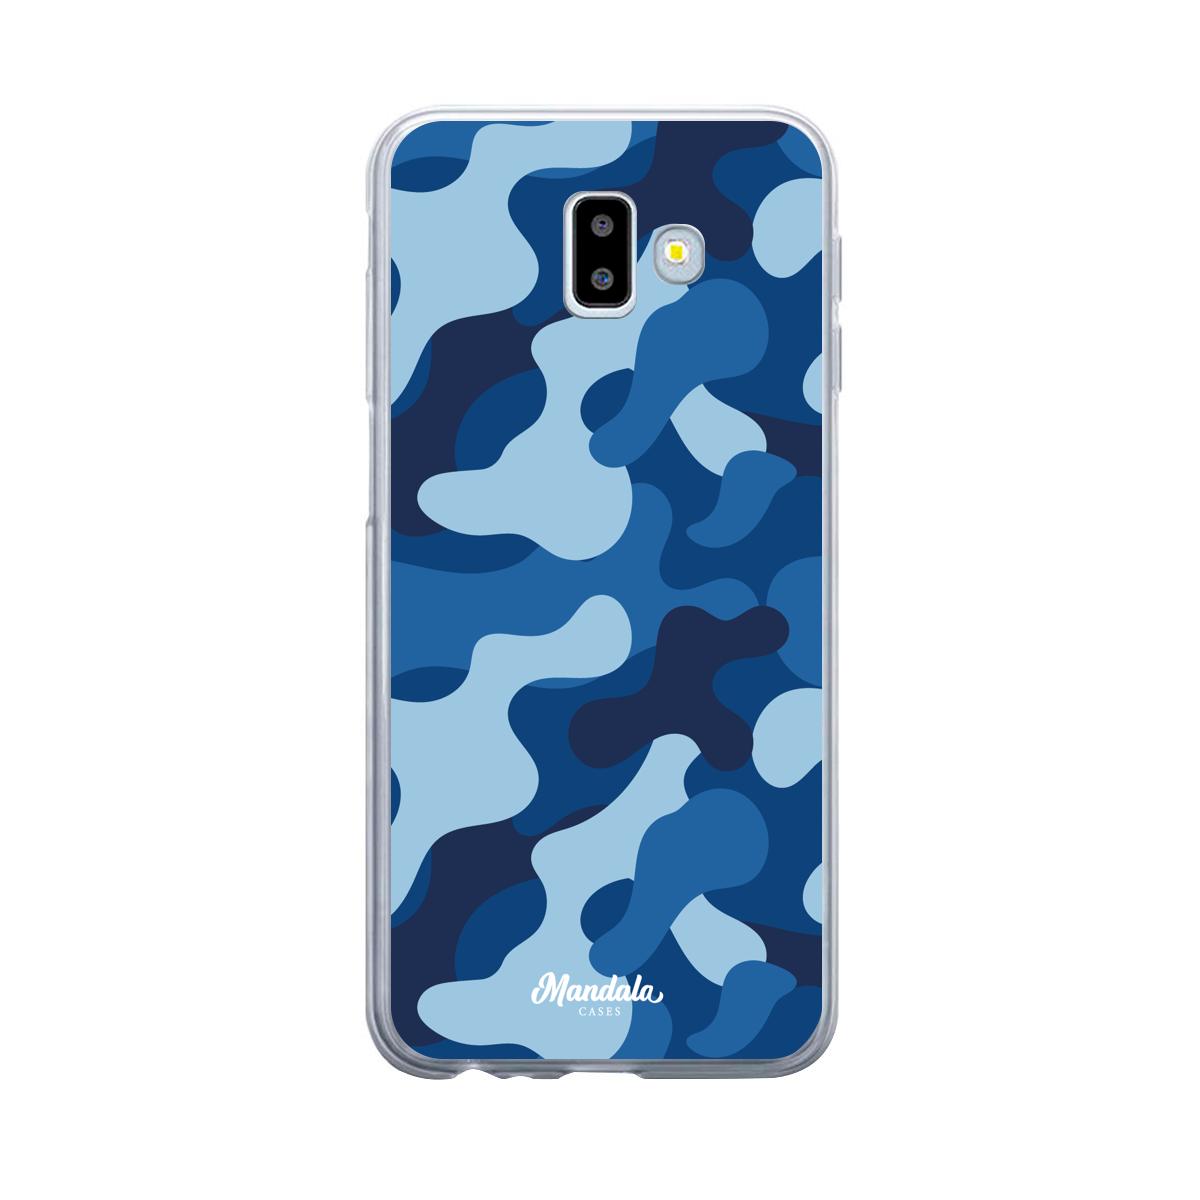 Estuches para Samsung J6 Plus - Blue Militare Case  - Mandala Cases